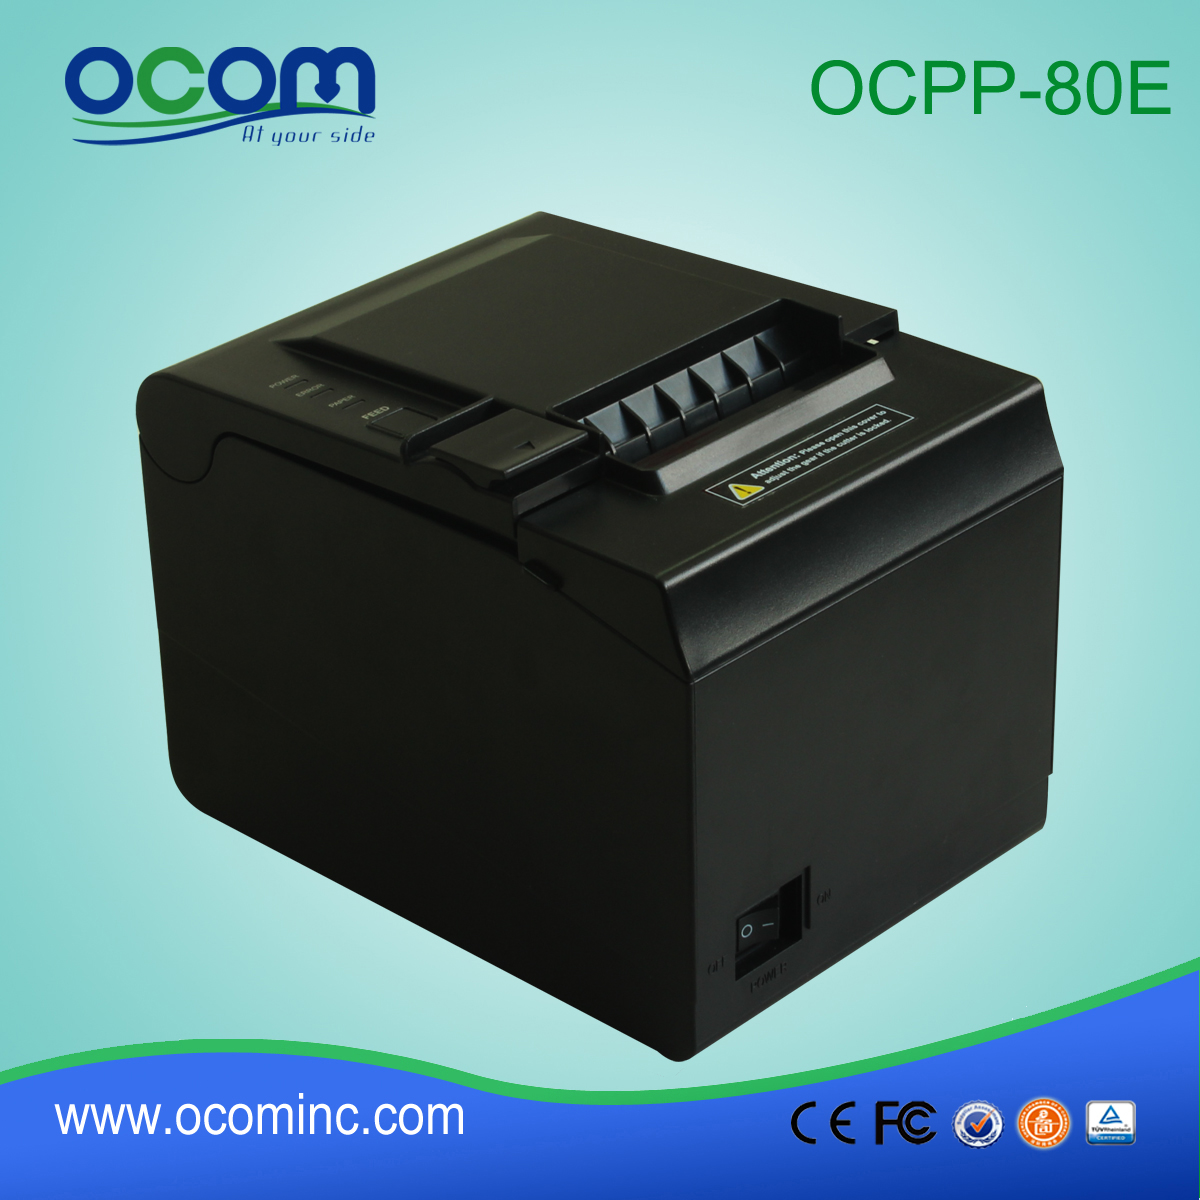 OCPP-80E Impressora de recibos térmica da impressora POS 80mm suporta detecção de marcas pretas